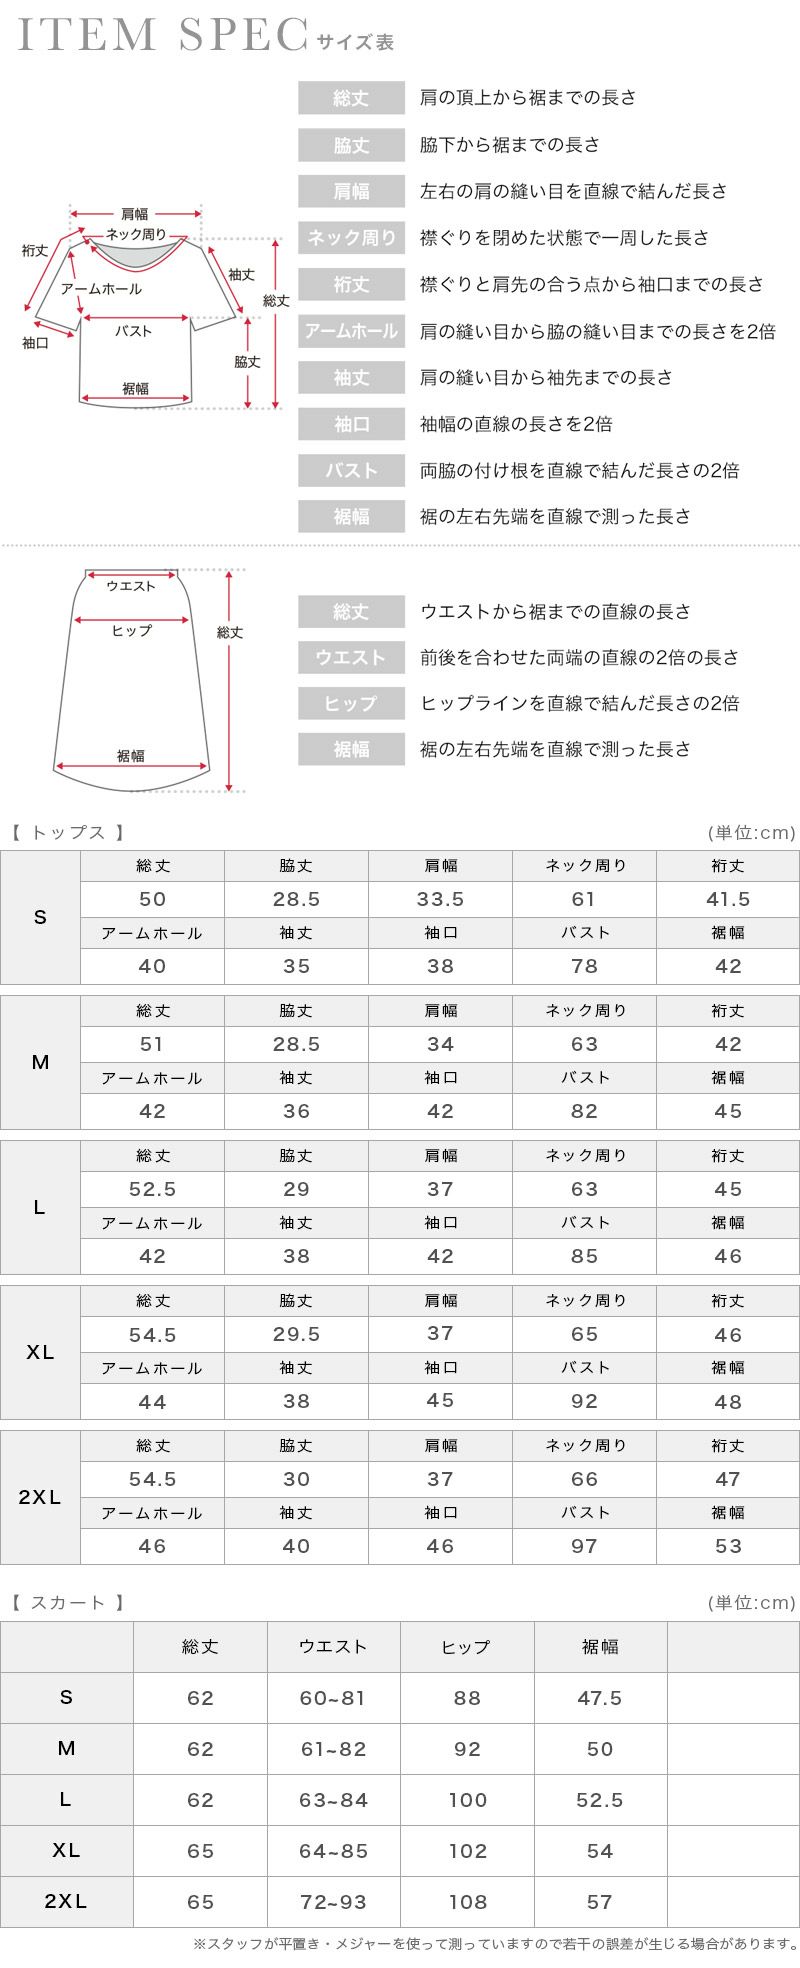 ツーピース七部袖レースミディアムスカートパーティードレスのサイズ表